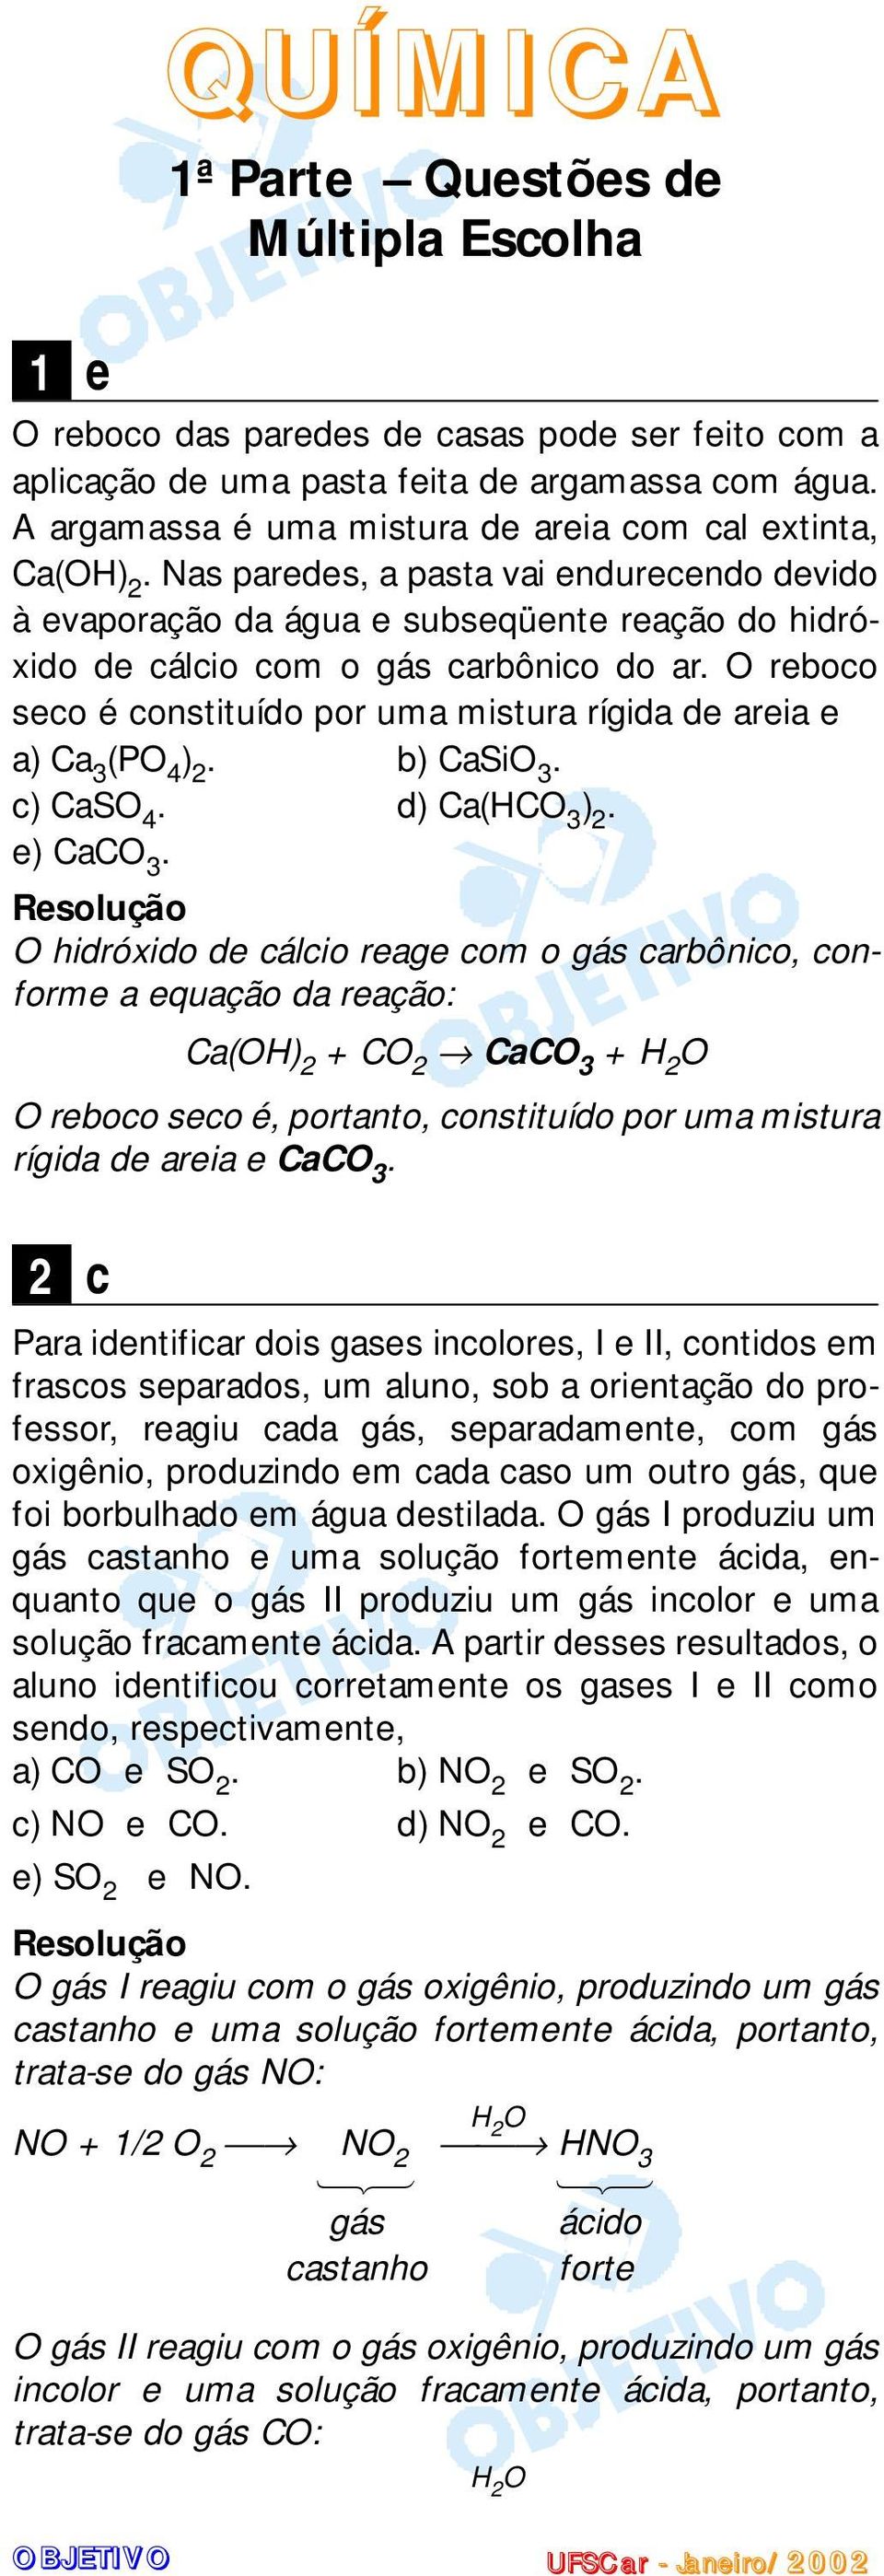 areia e a) Ca 3 (PO 4 ) b) CaSiO 3 c) CaSO 4 d) Ca(HCO 3 ) e) CaCO 3 O hidróxido de cálcio reage com o gás carbônico, conforme a equação da reação: Ca(OH) + CO CaCO 3 + H O O reboco seco é, portanto,